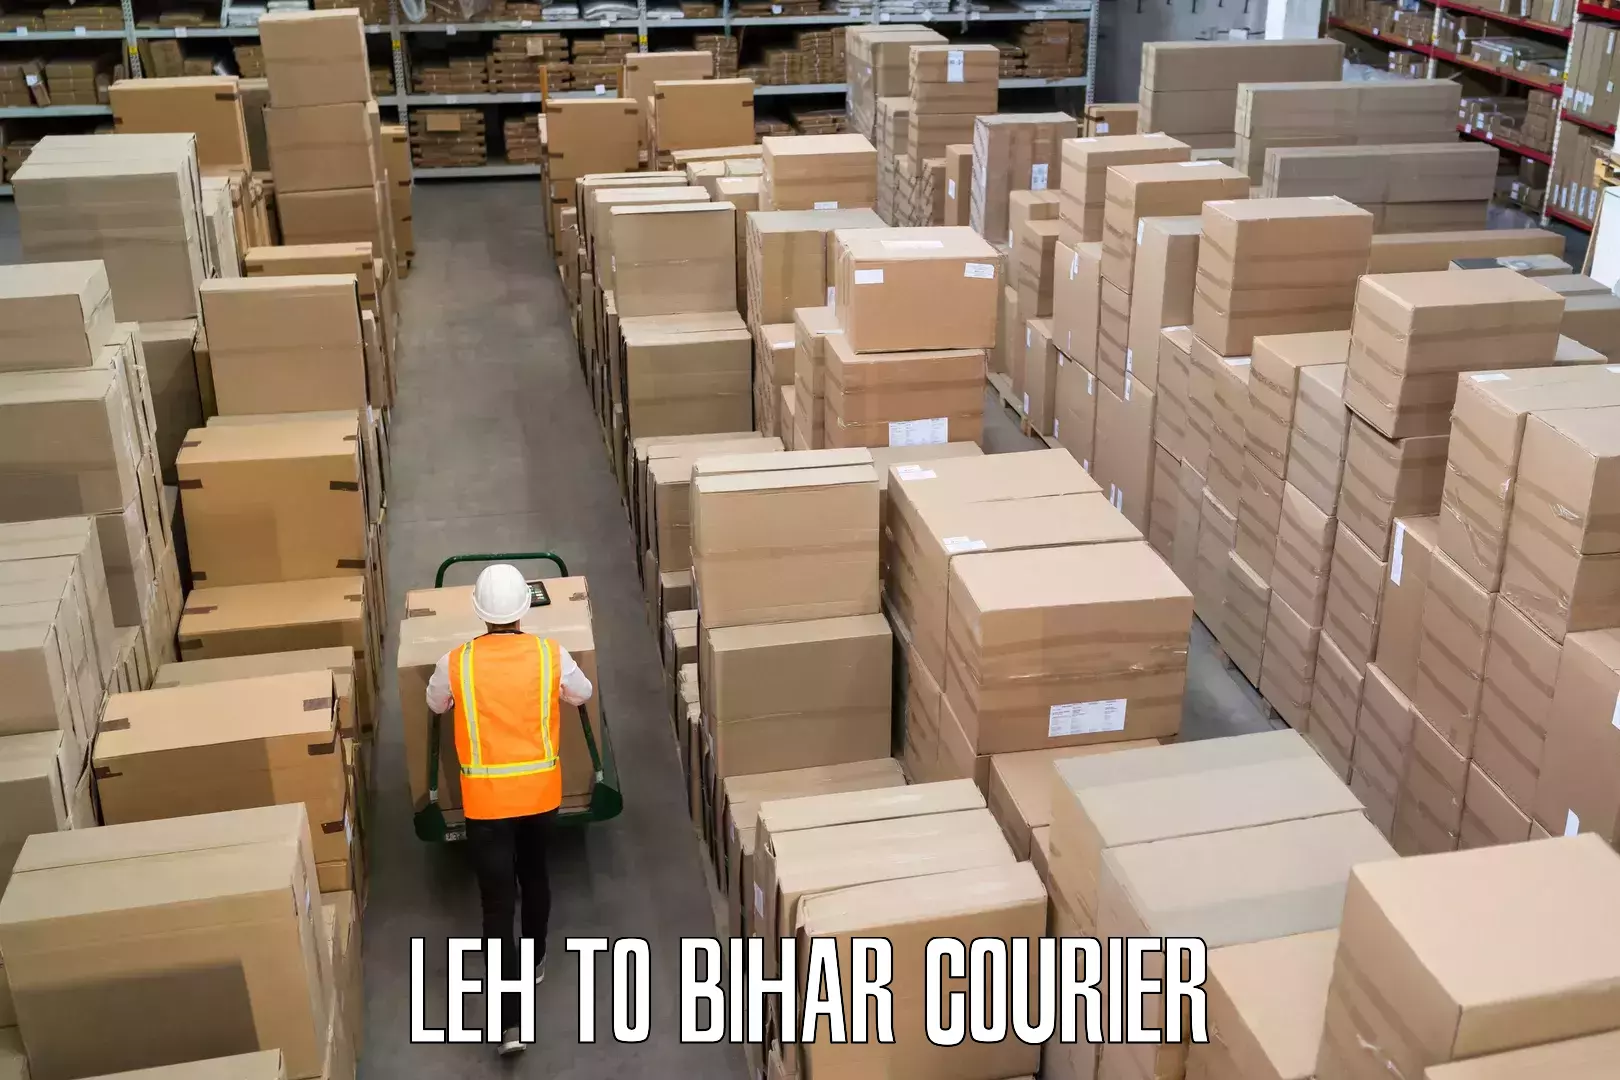 Baggage transport network Leh to Bihar